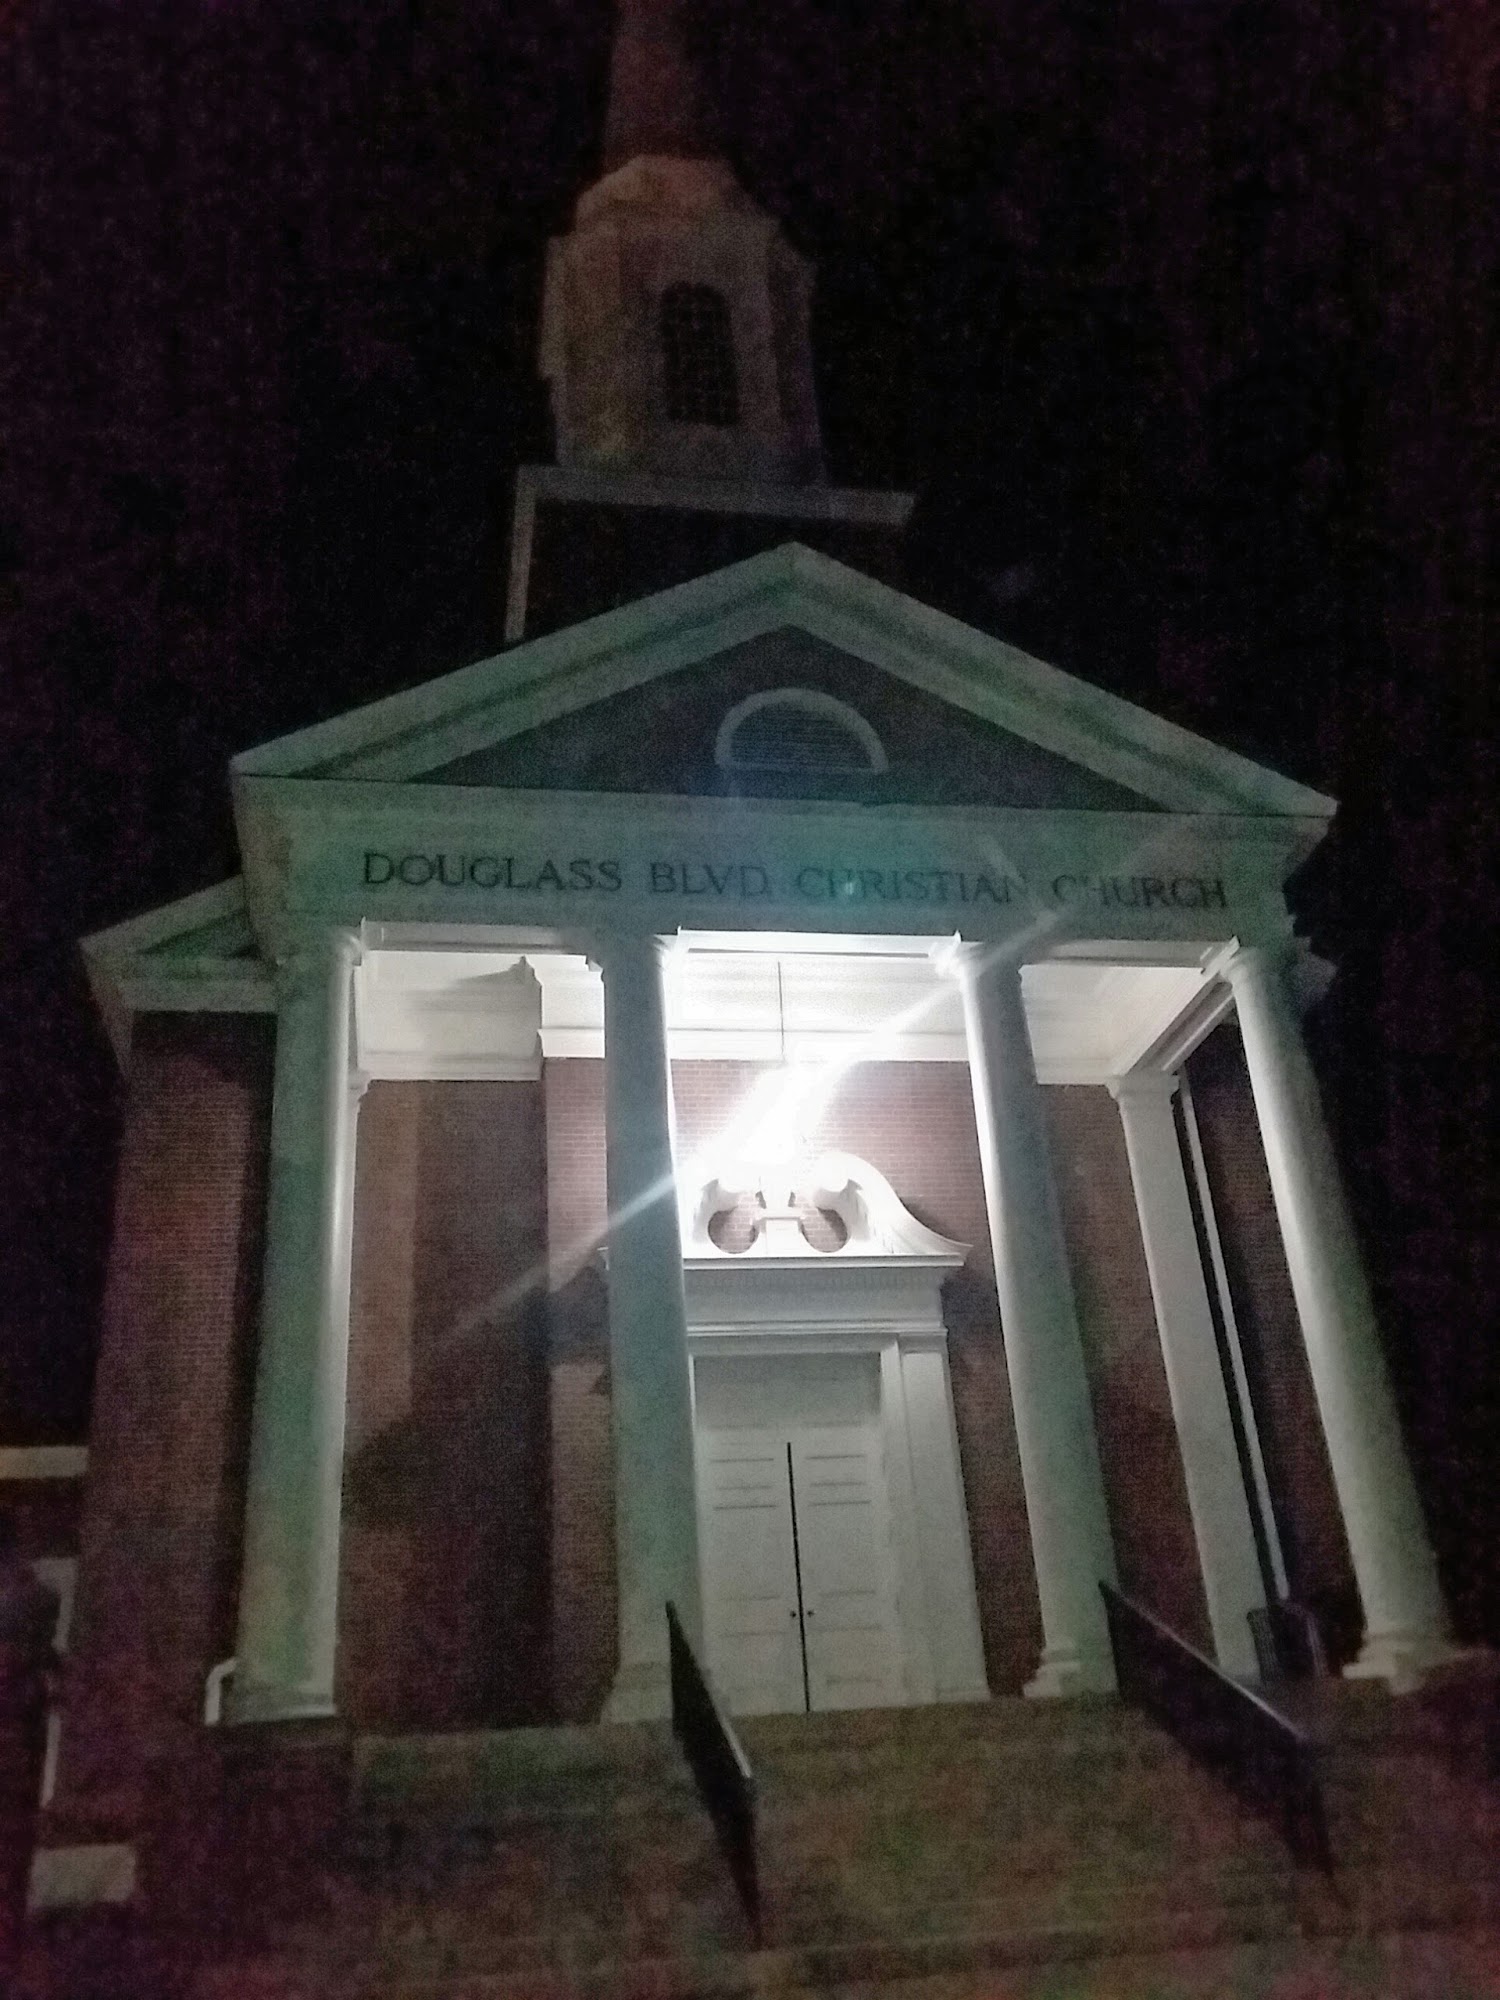 Douglass Boulevard Christian Church